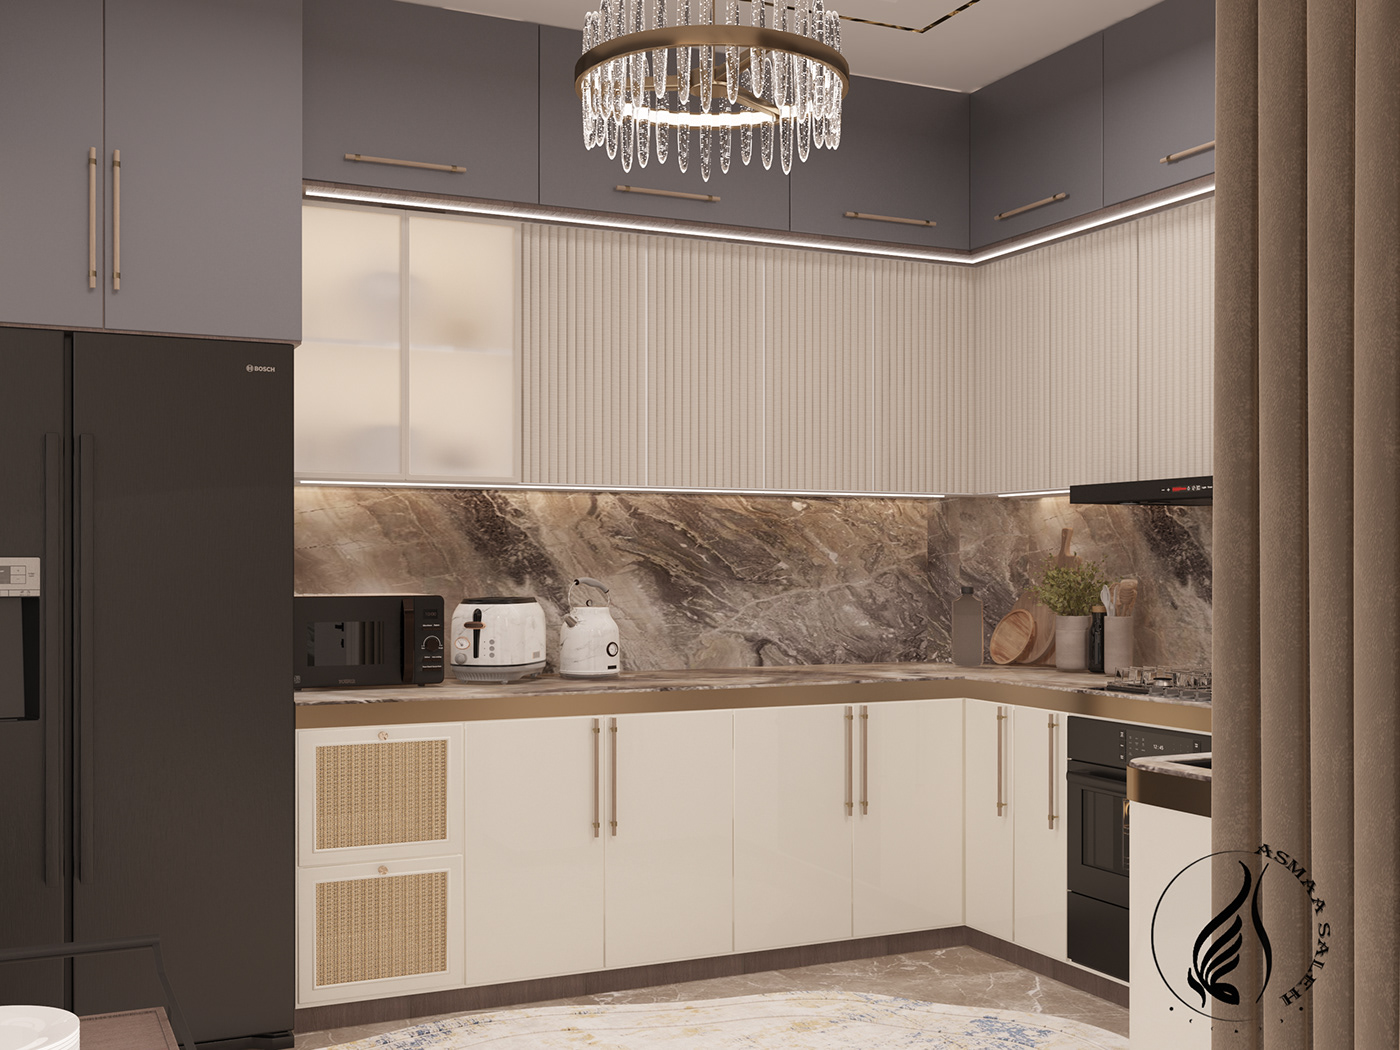 design interior design  architecture visualization 3ds max decoration kitchen modern luxury home